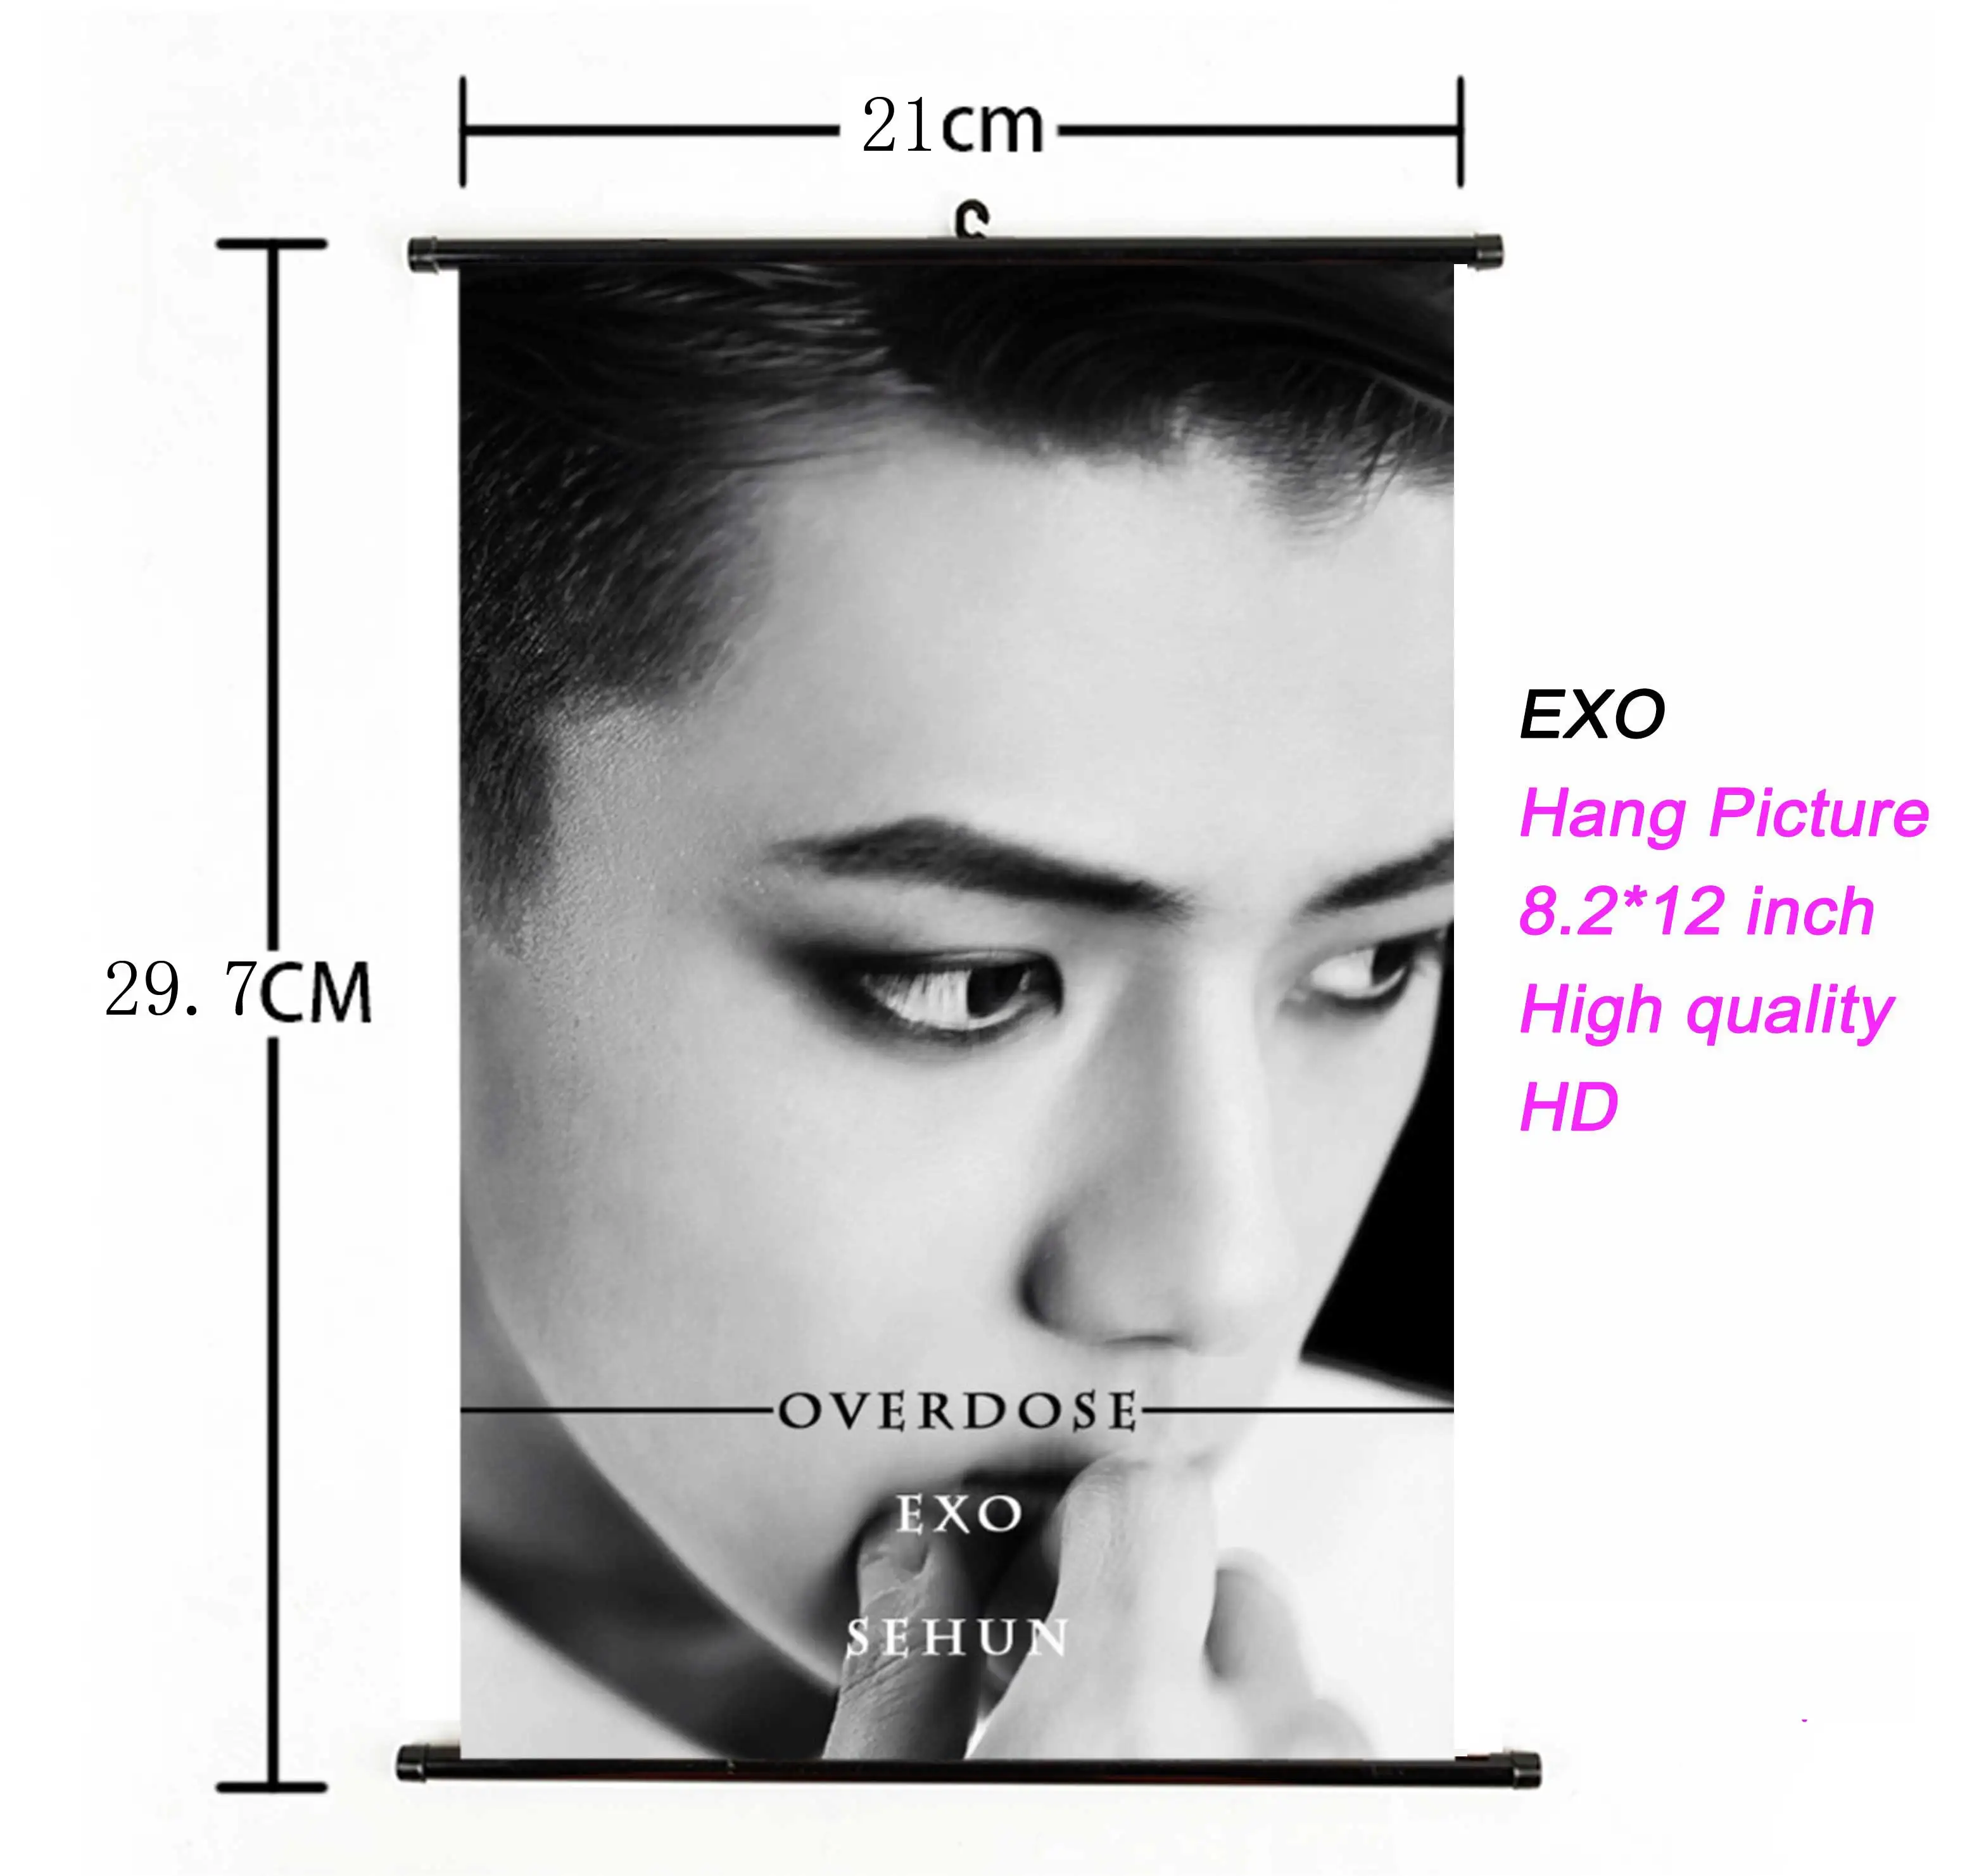 K-pop EXO альбом висячая картина фото плакат Kpop EXO висячий плакат ткань 21*30 см Высокое качество для поклонников Коллекция подарков - Цвет: 79